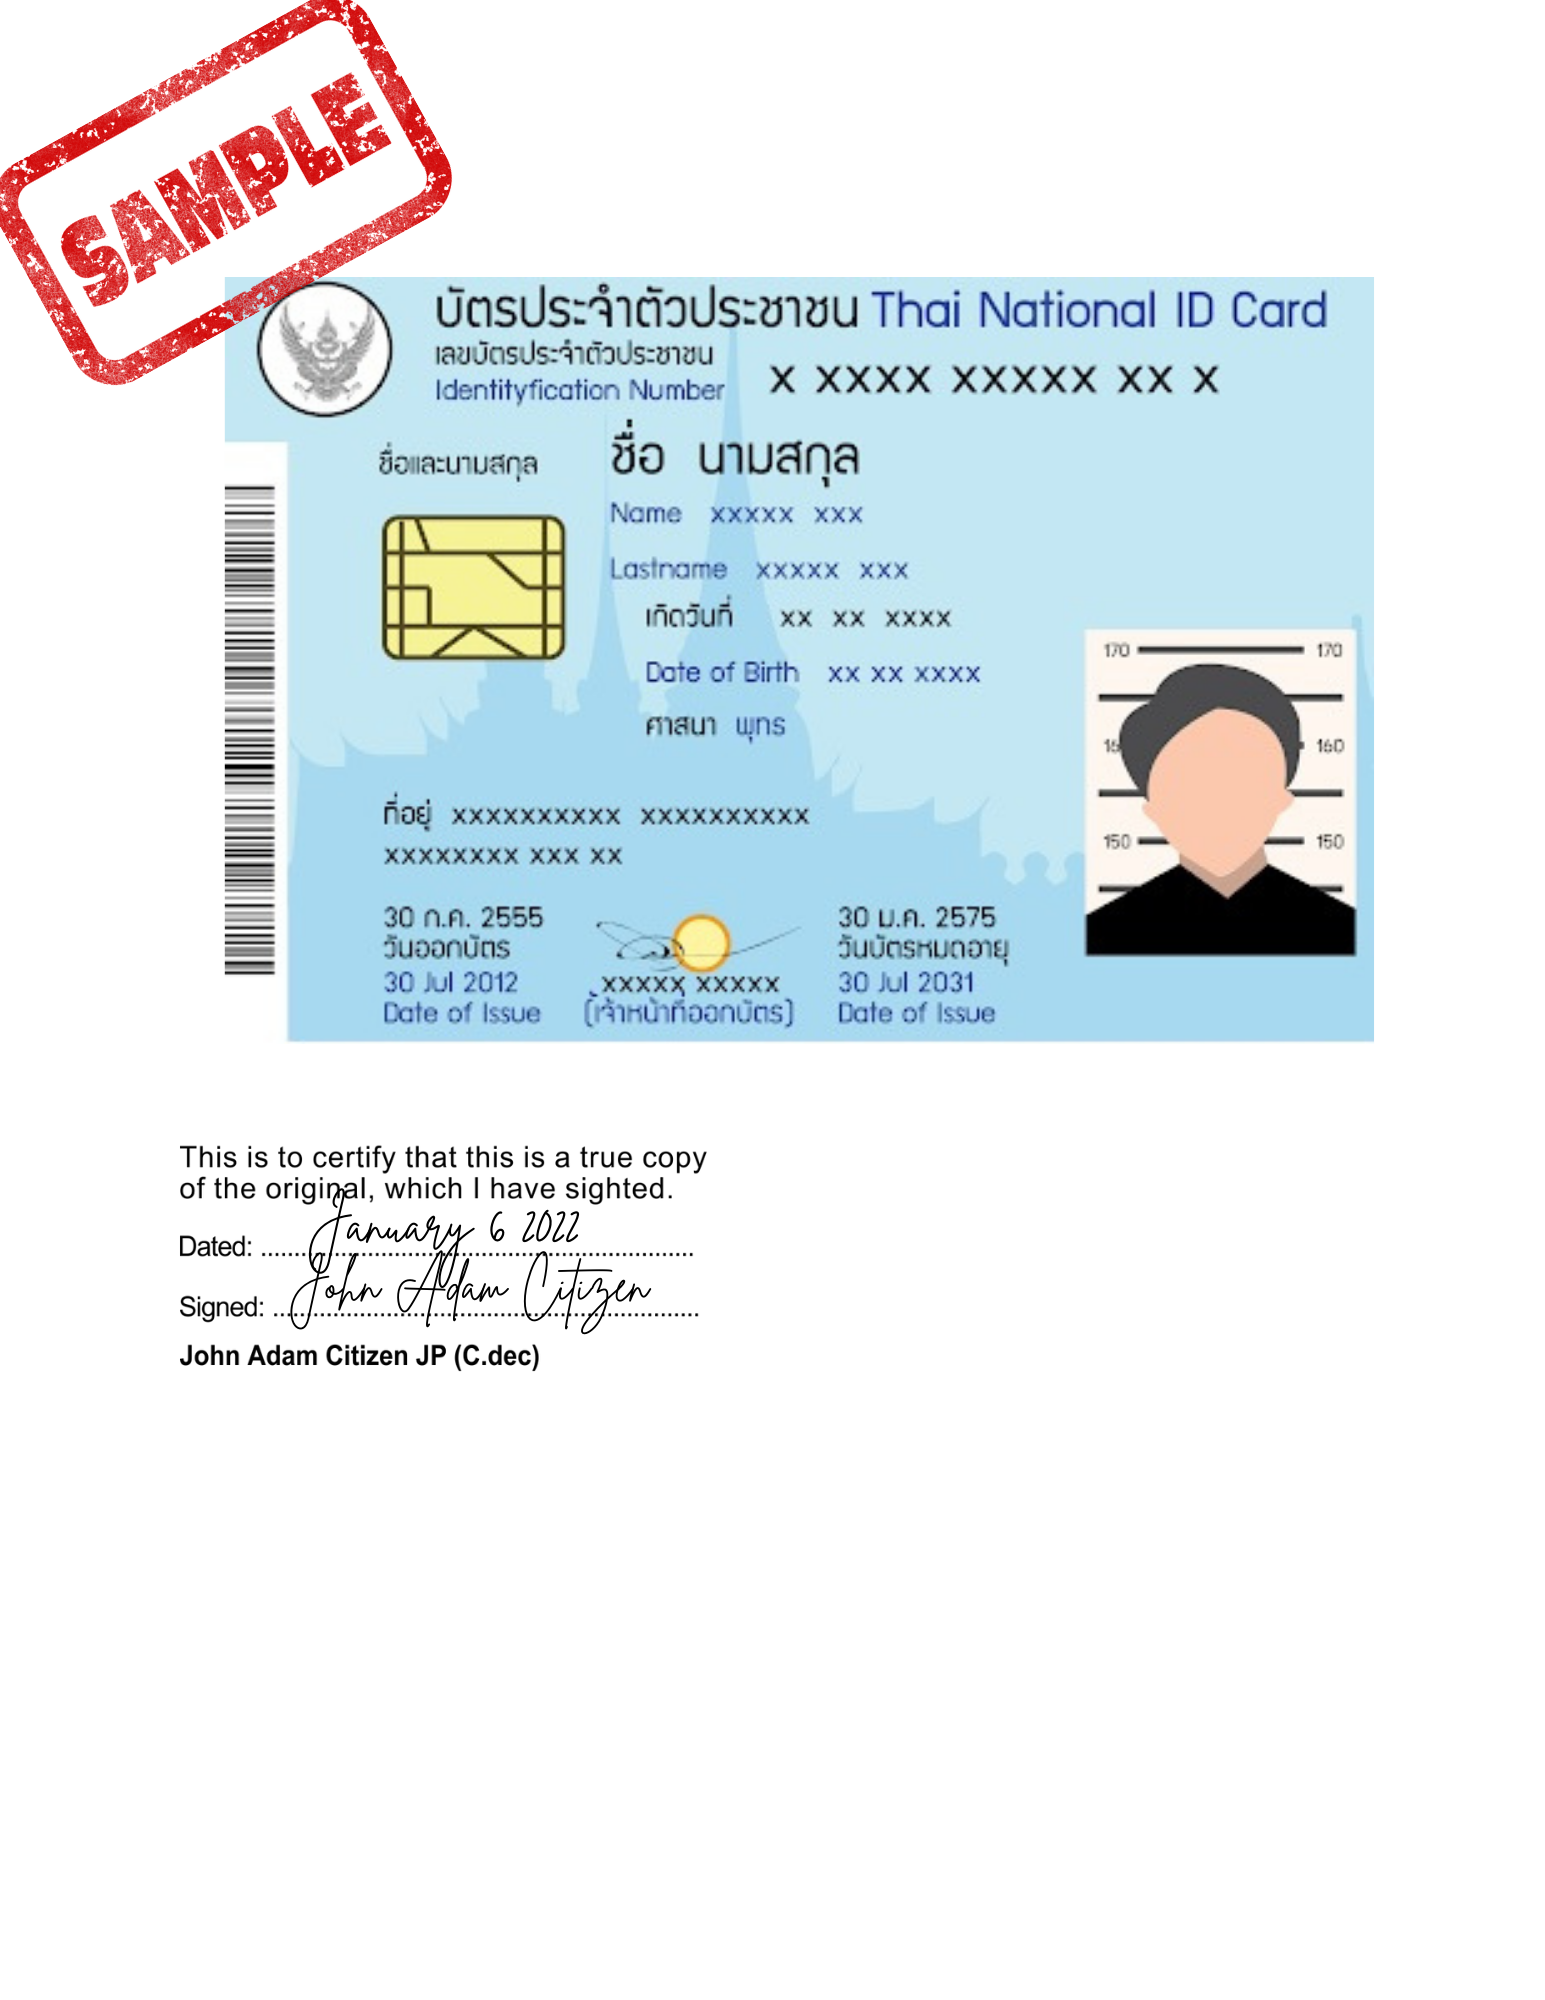 Sample-of-certified-true-copy-Thai-ID-